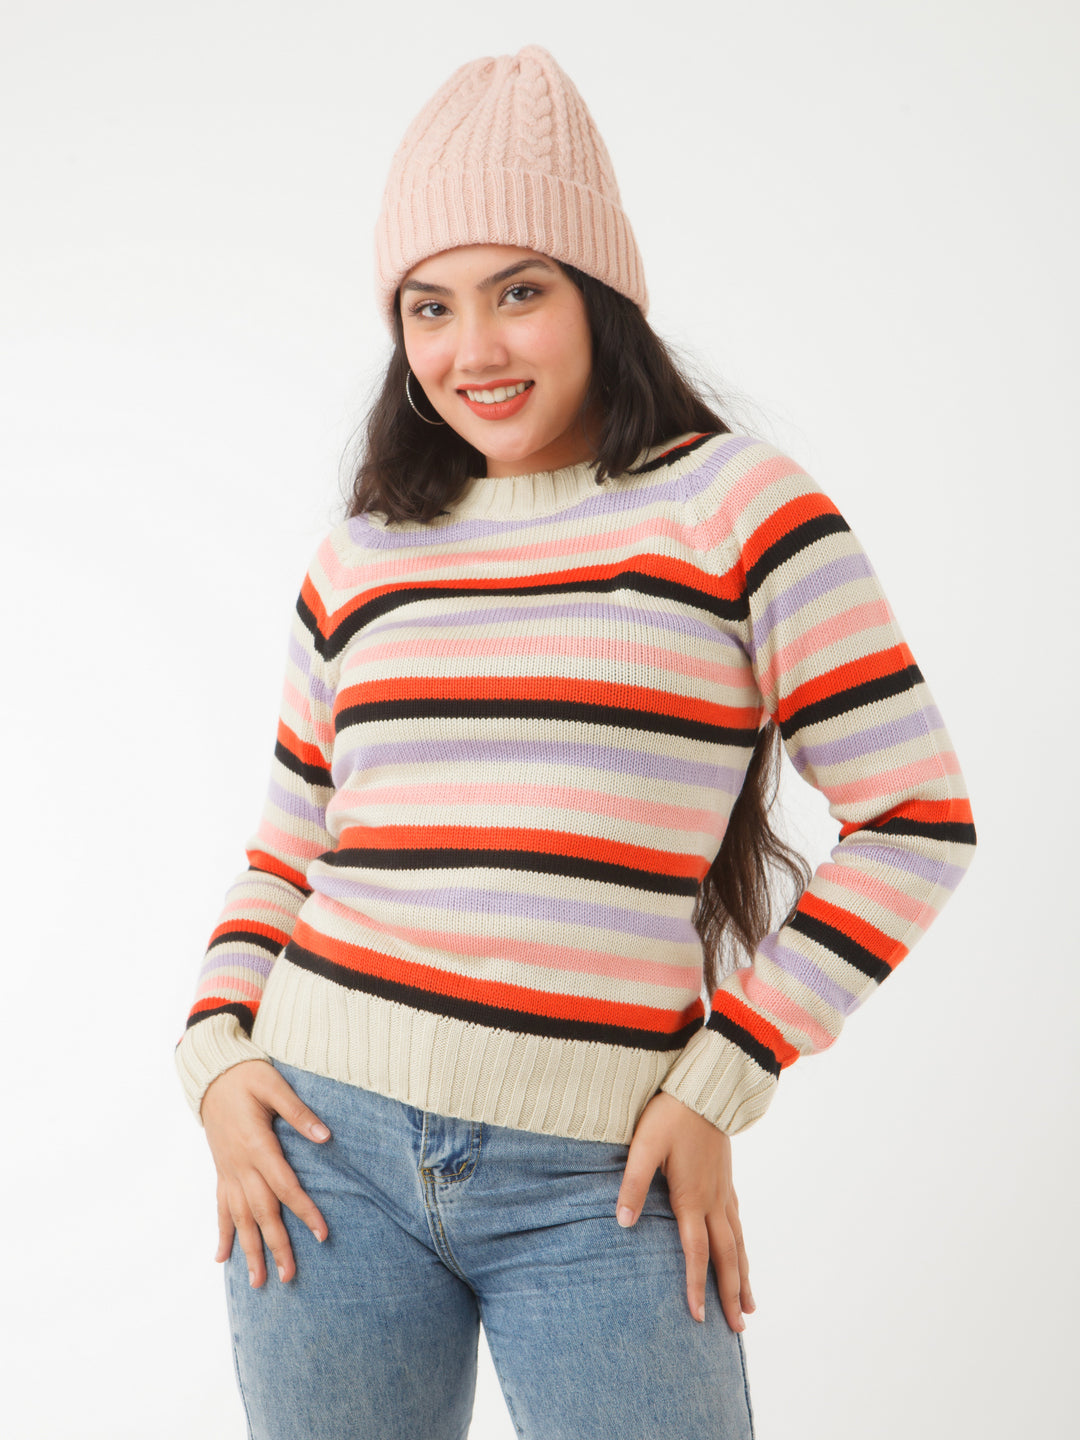 Multicolored Striped Sweater For Women